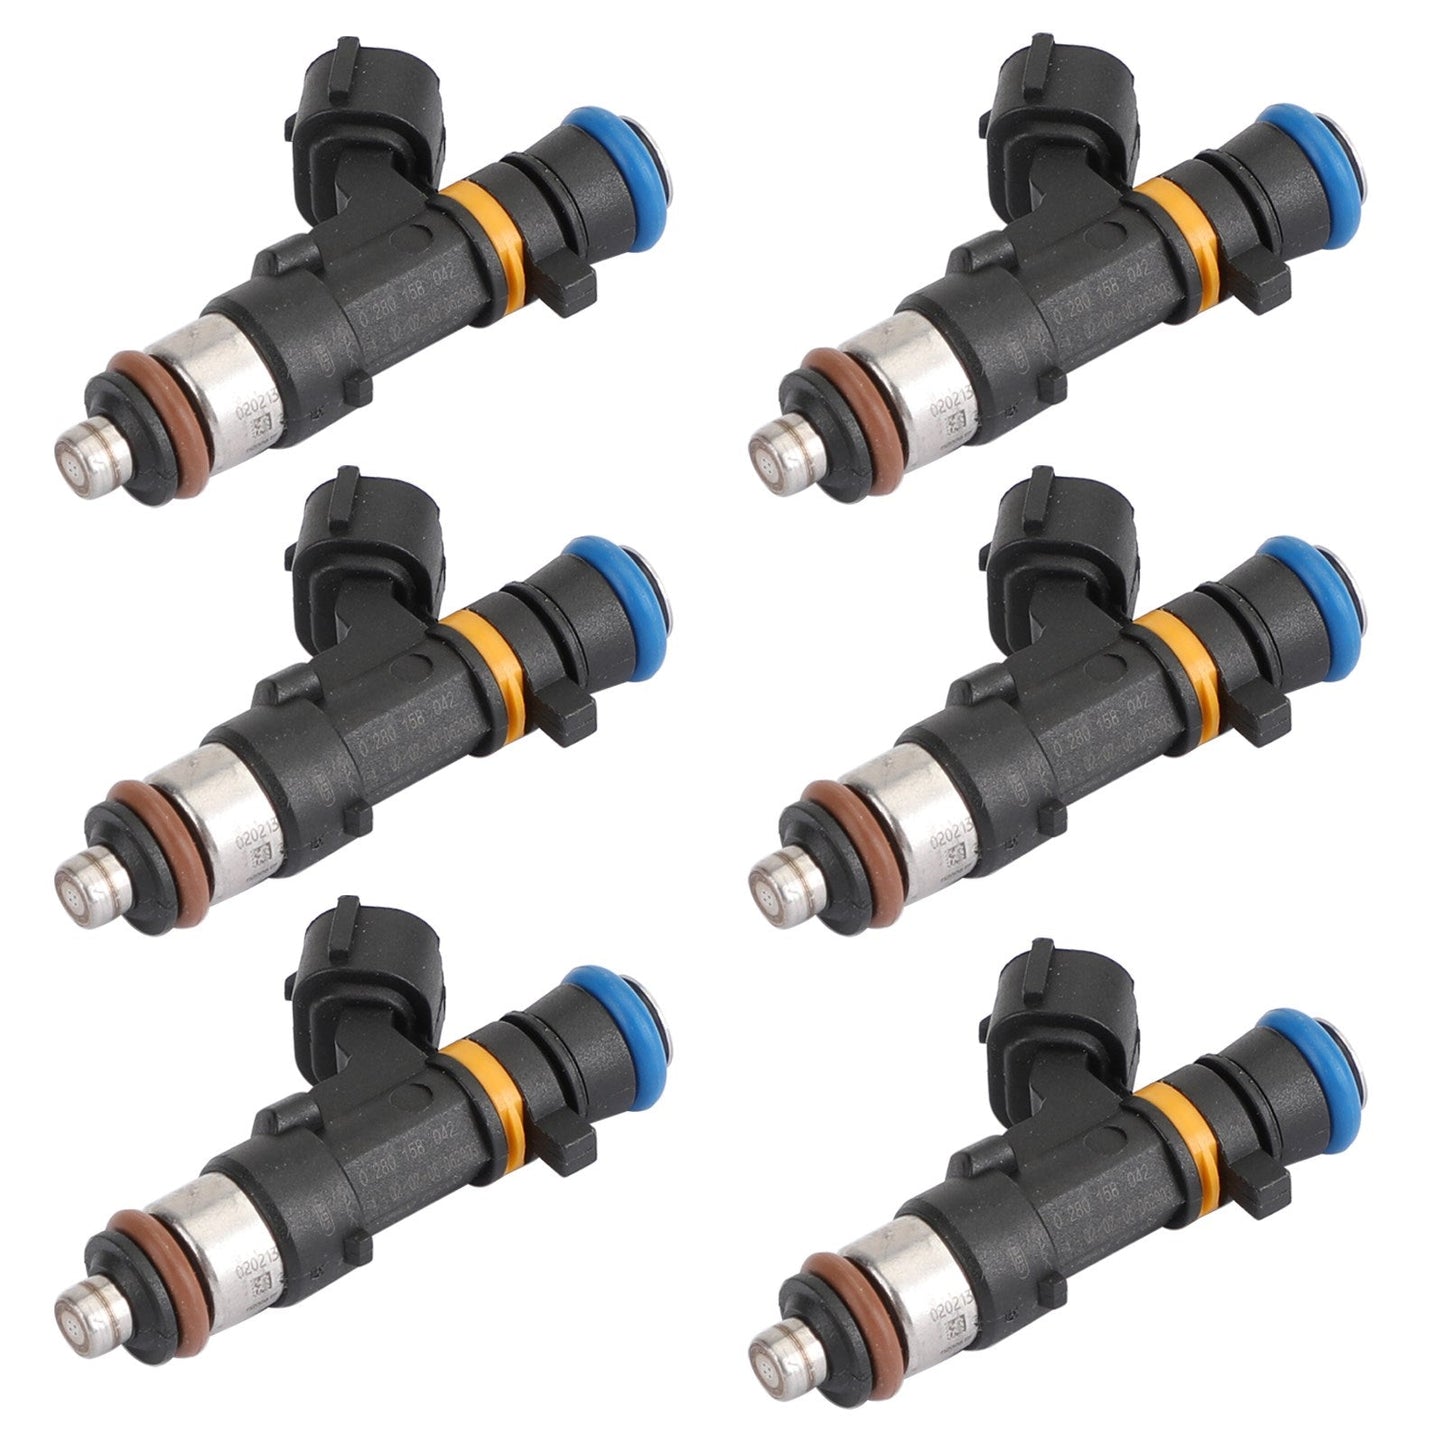 6pcs Fuel Injectors 16600-CD700 Fit Nissan FX35 M35 G35 V6 3.5L 0280158042